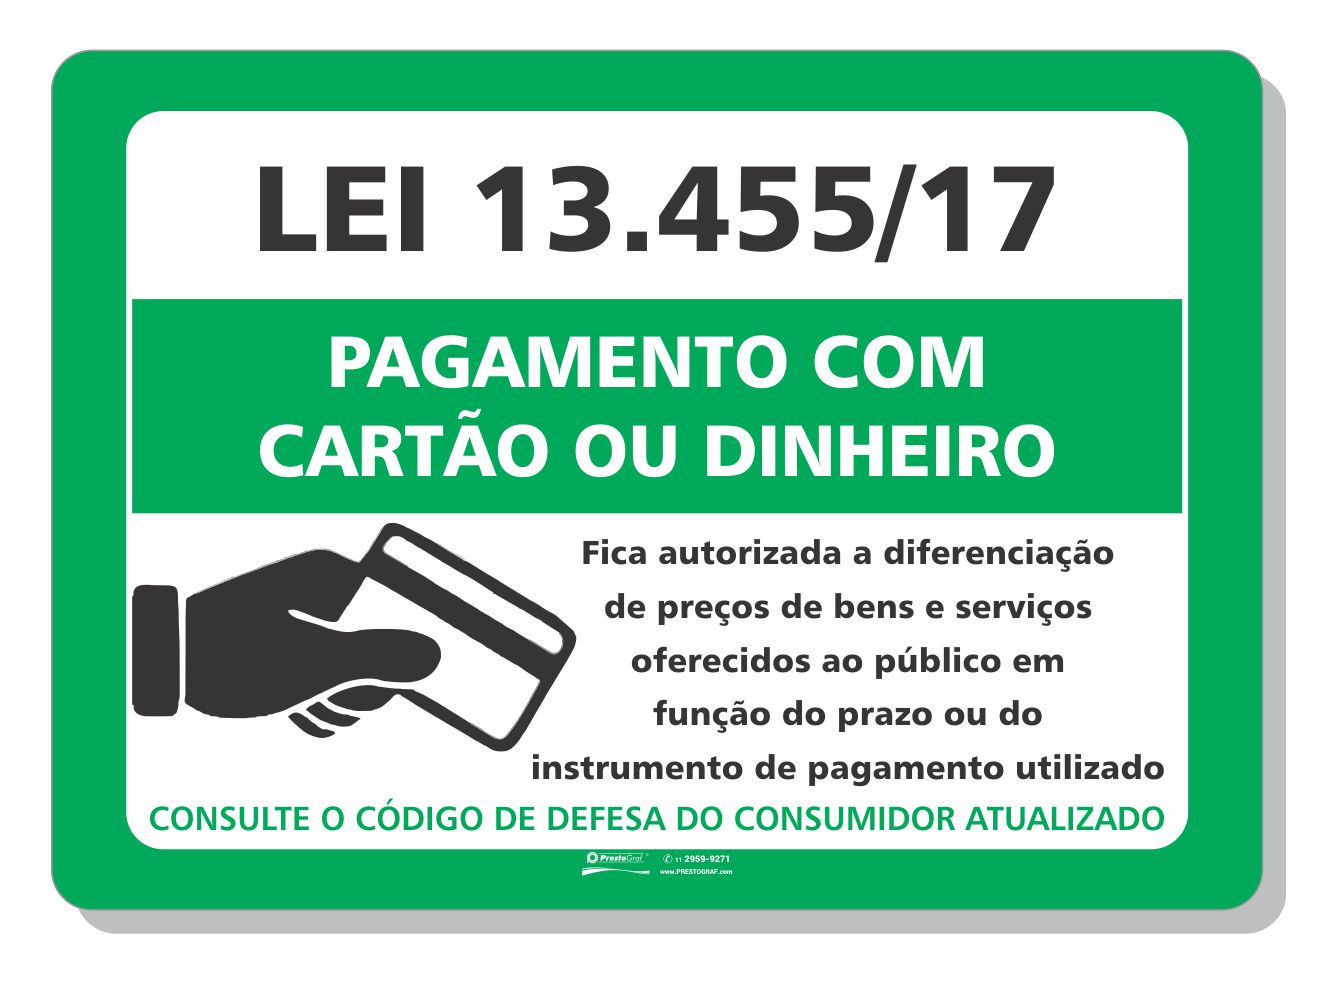 primeiro cassino legal no brasil